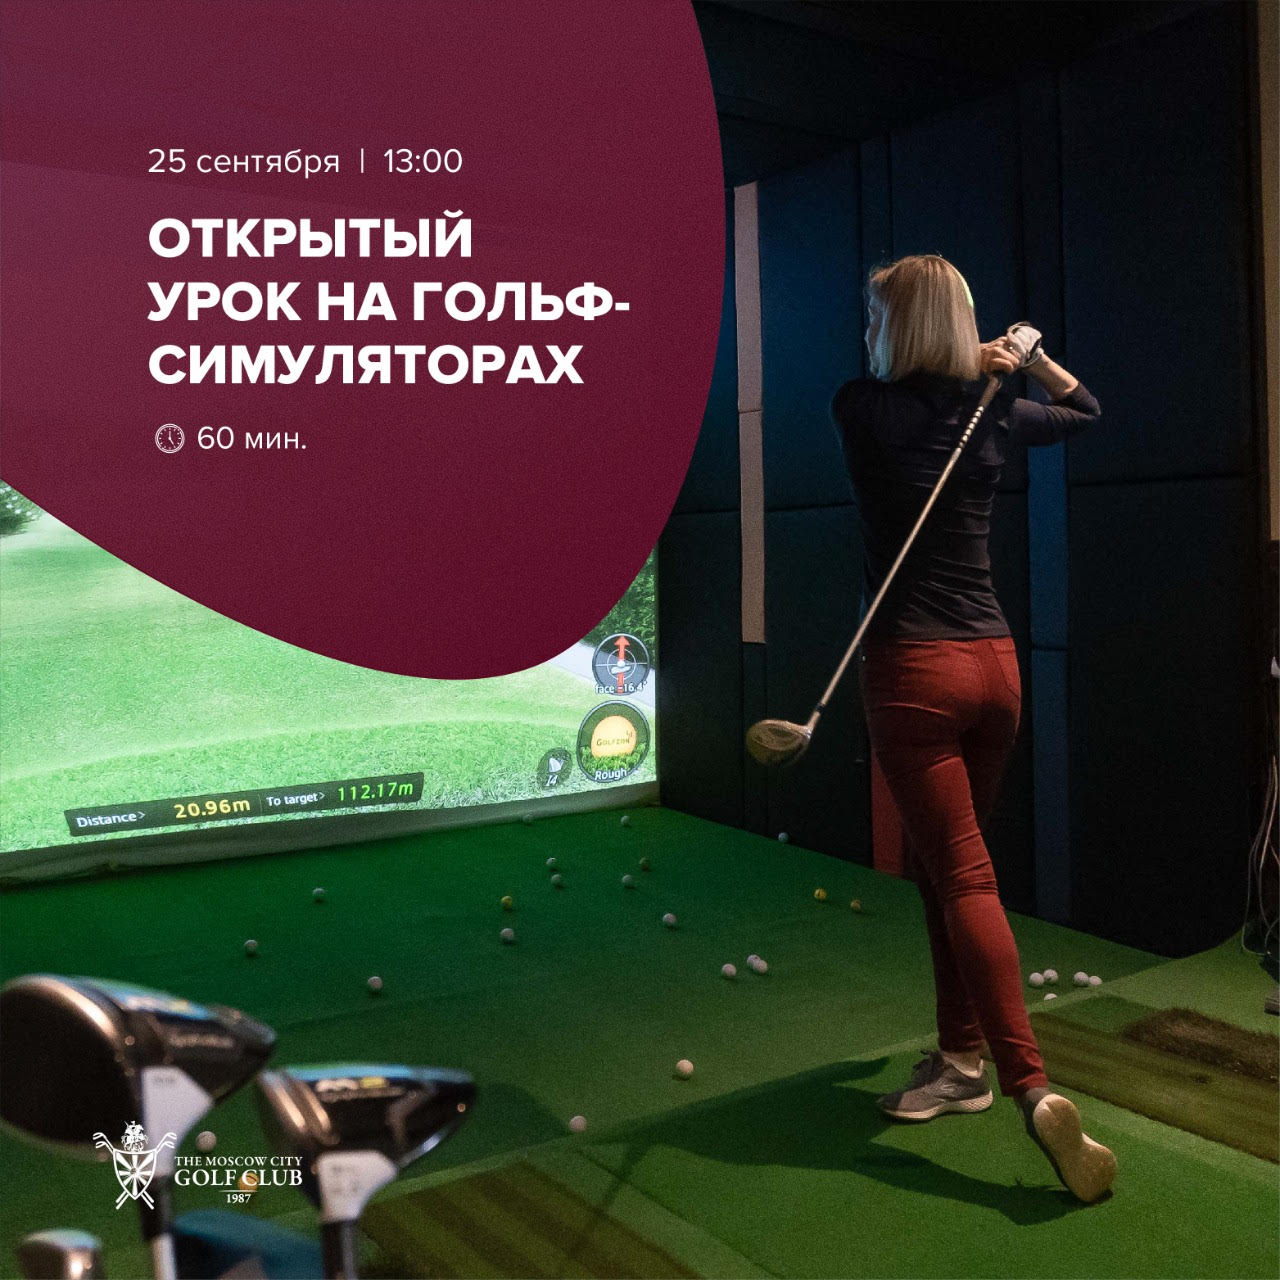 Открытый урок на гольф-симуляторах